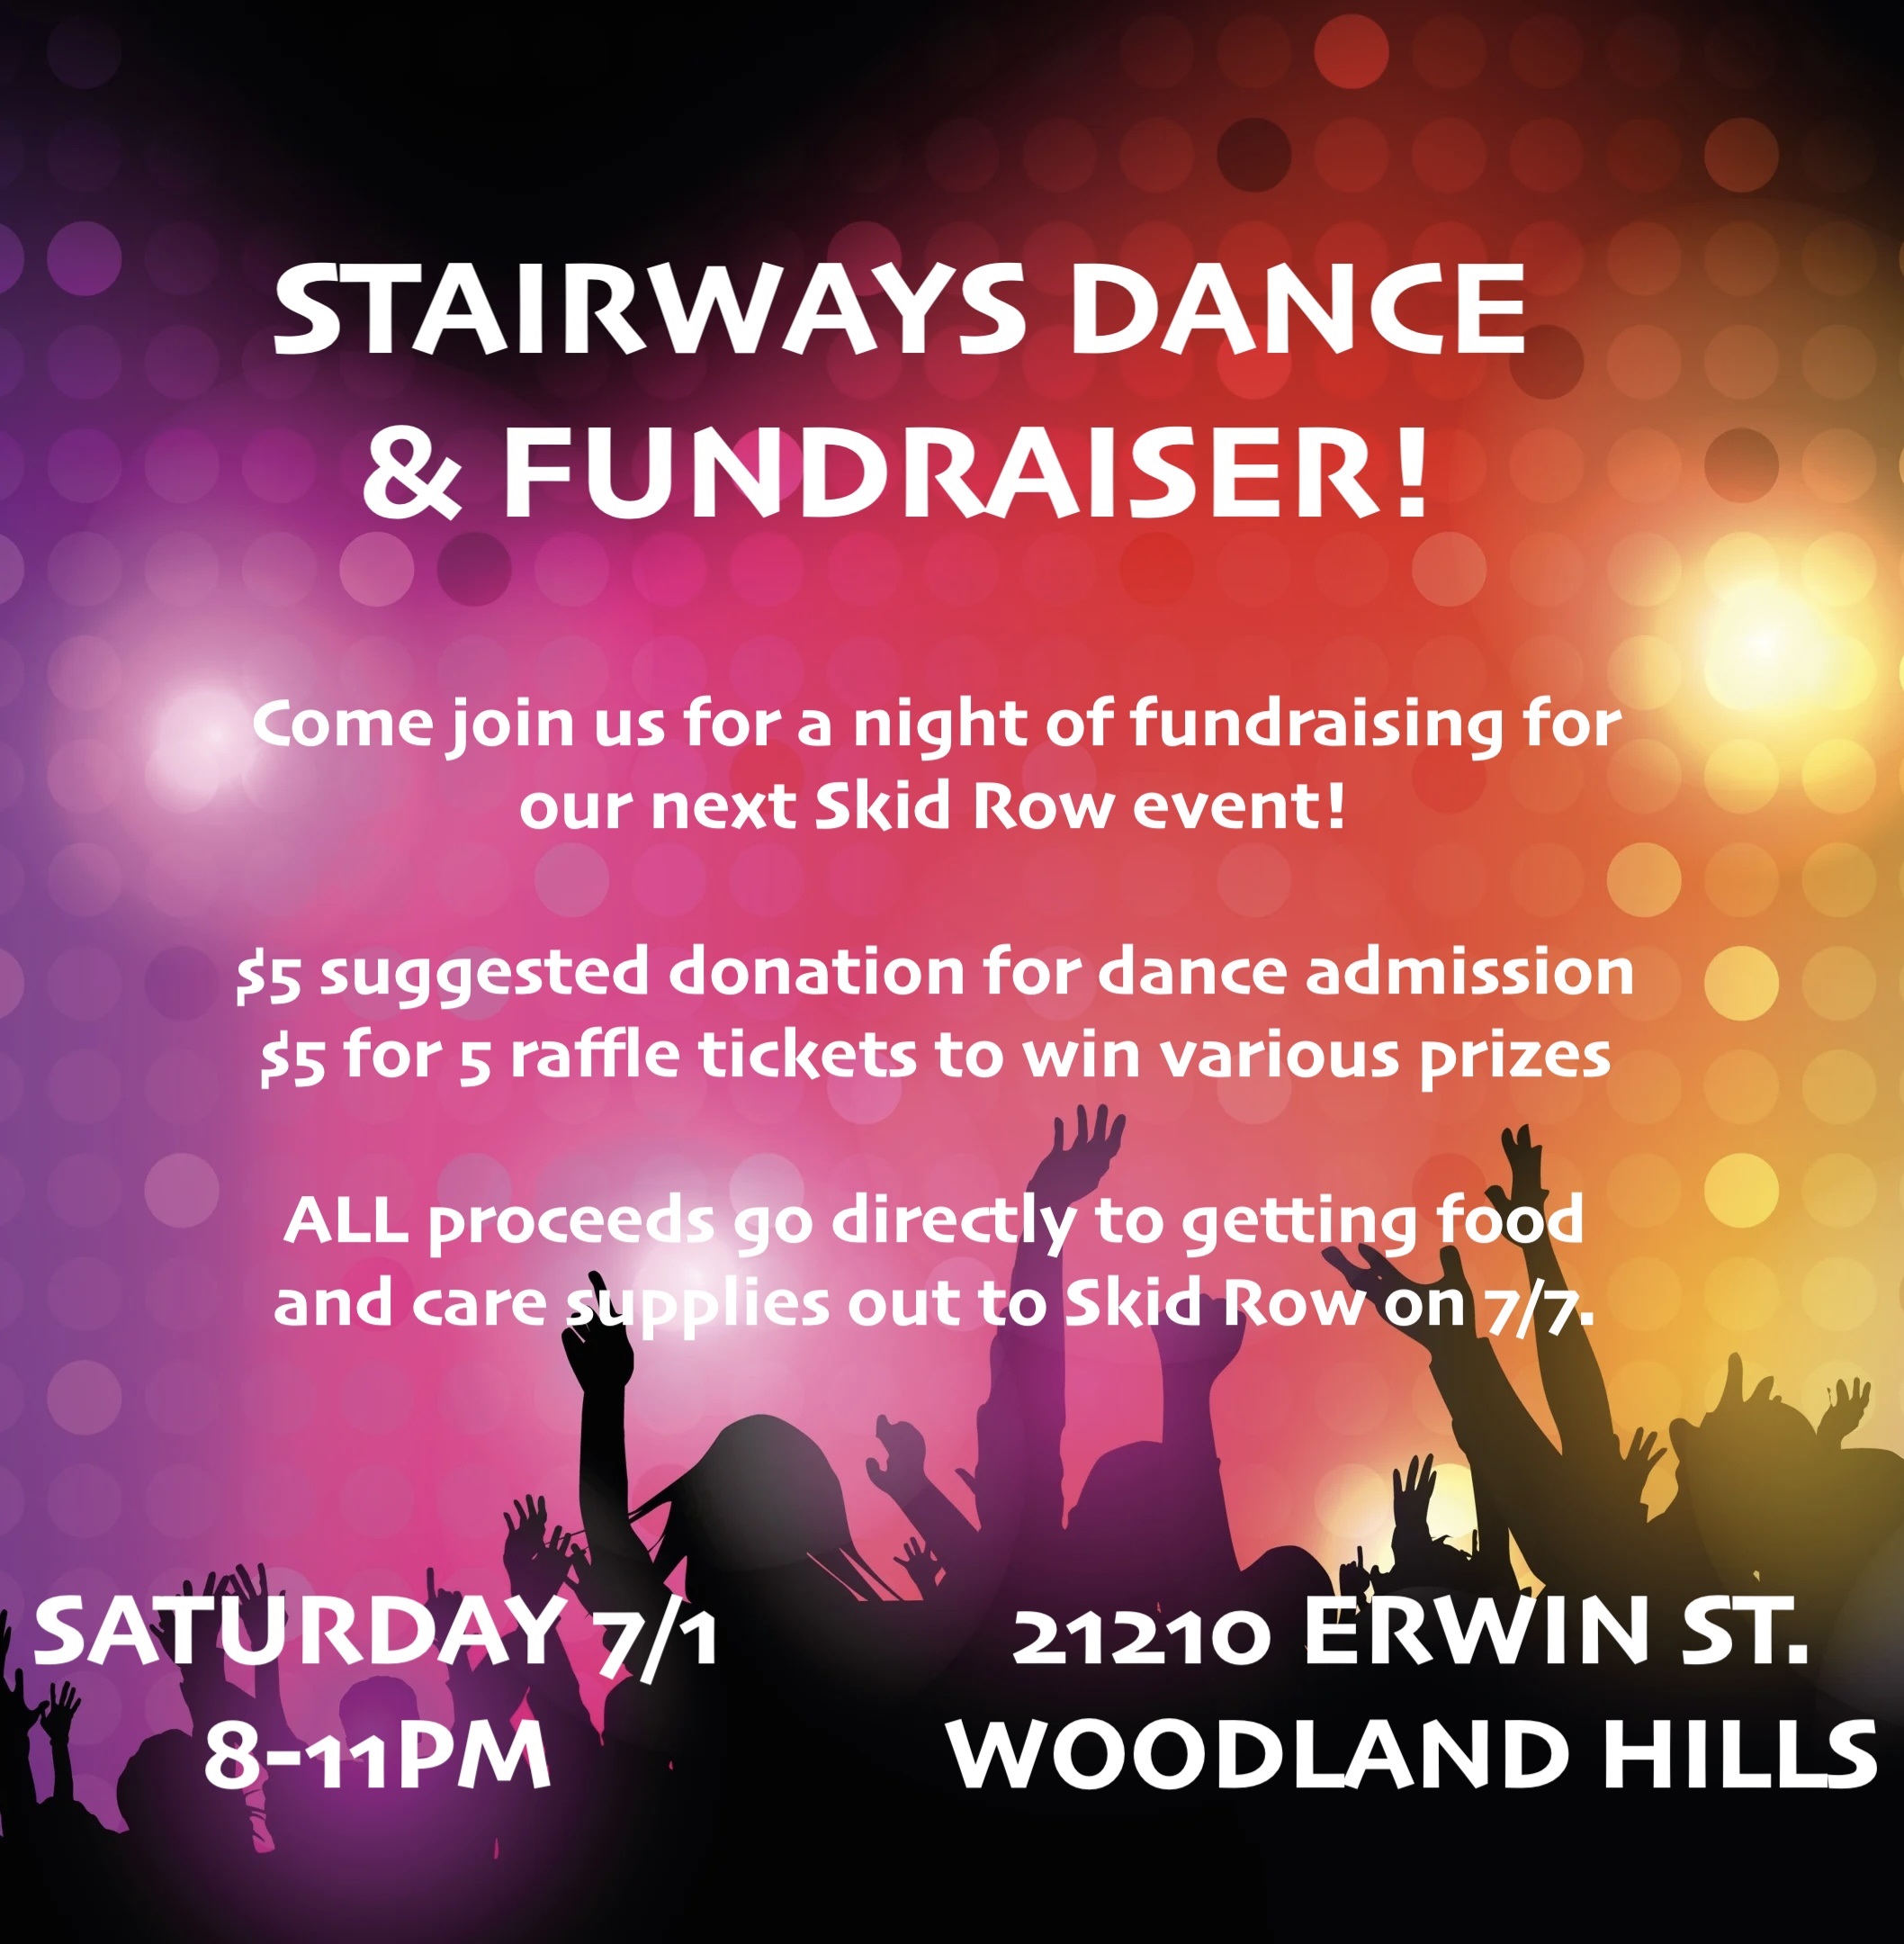 Stairways Dance & Fundraiser!